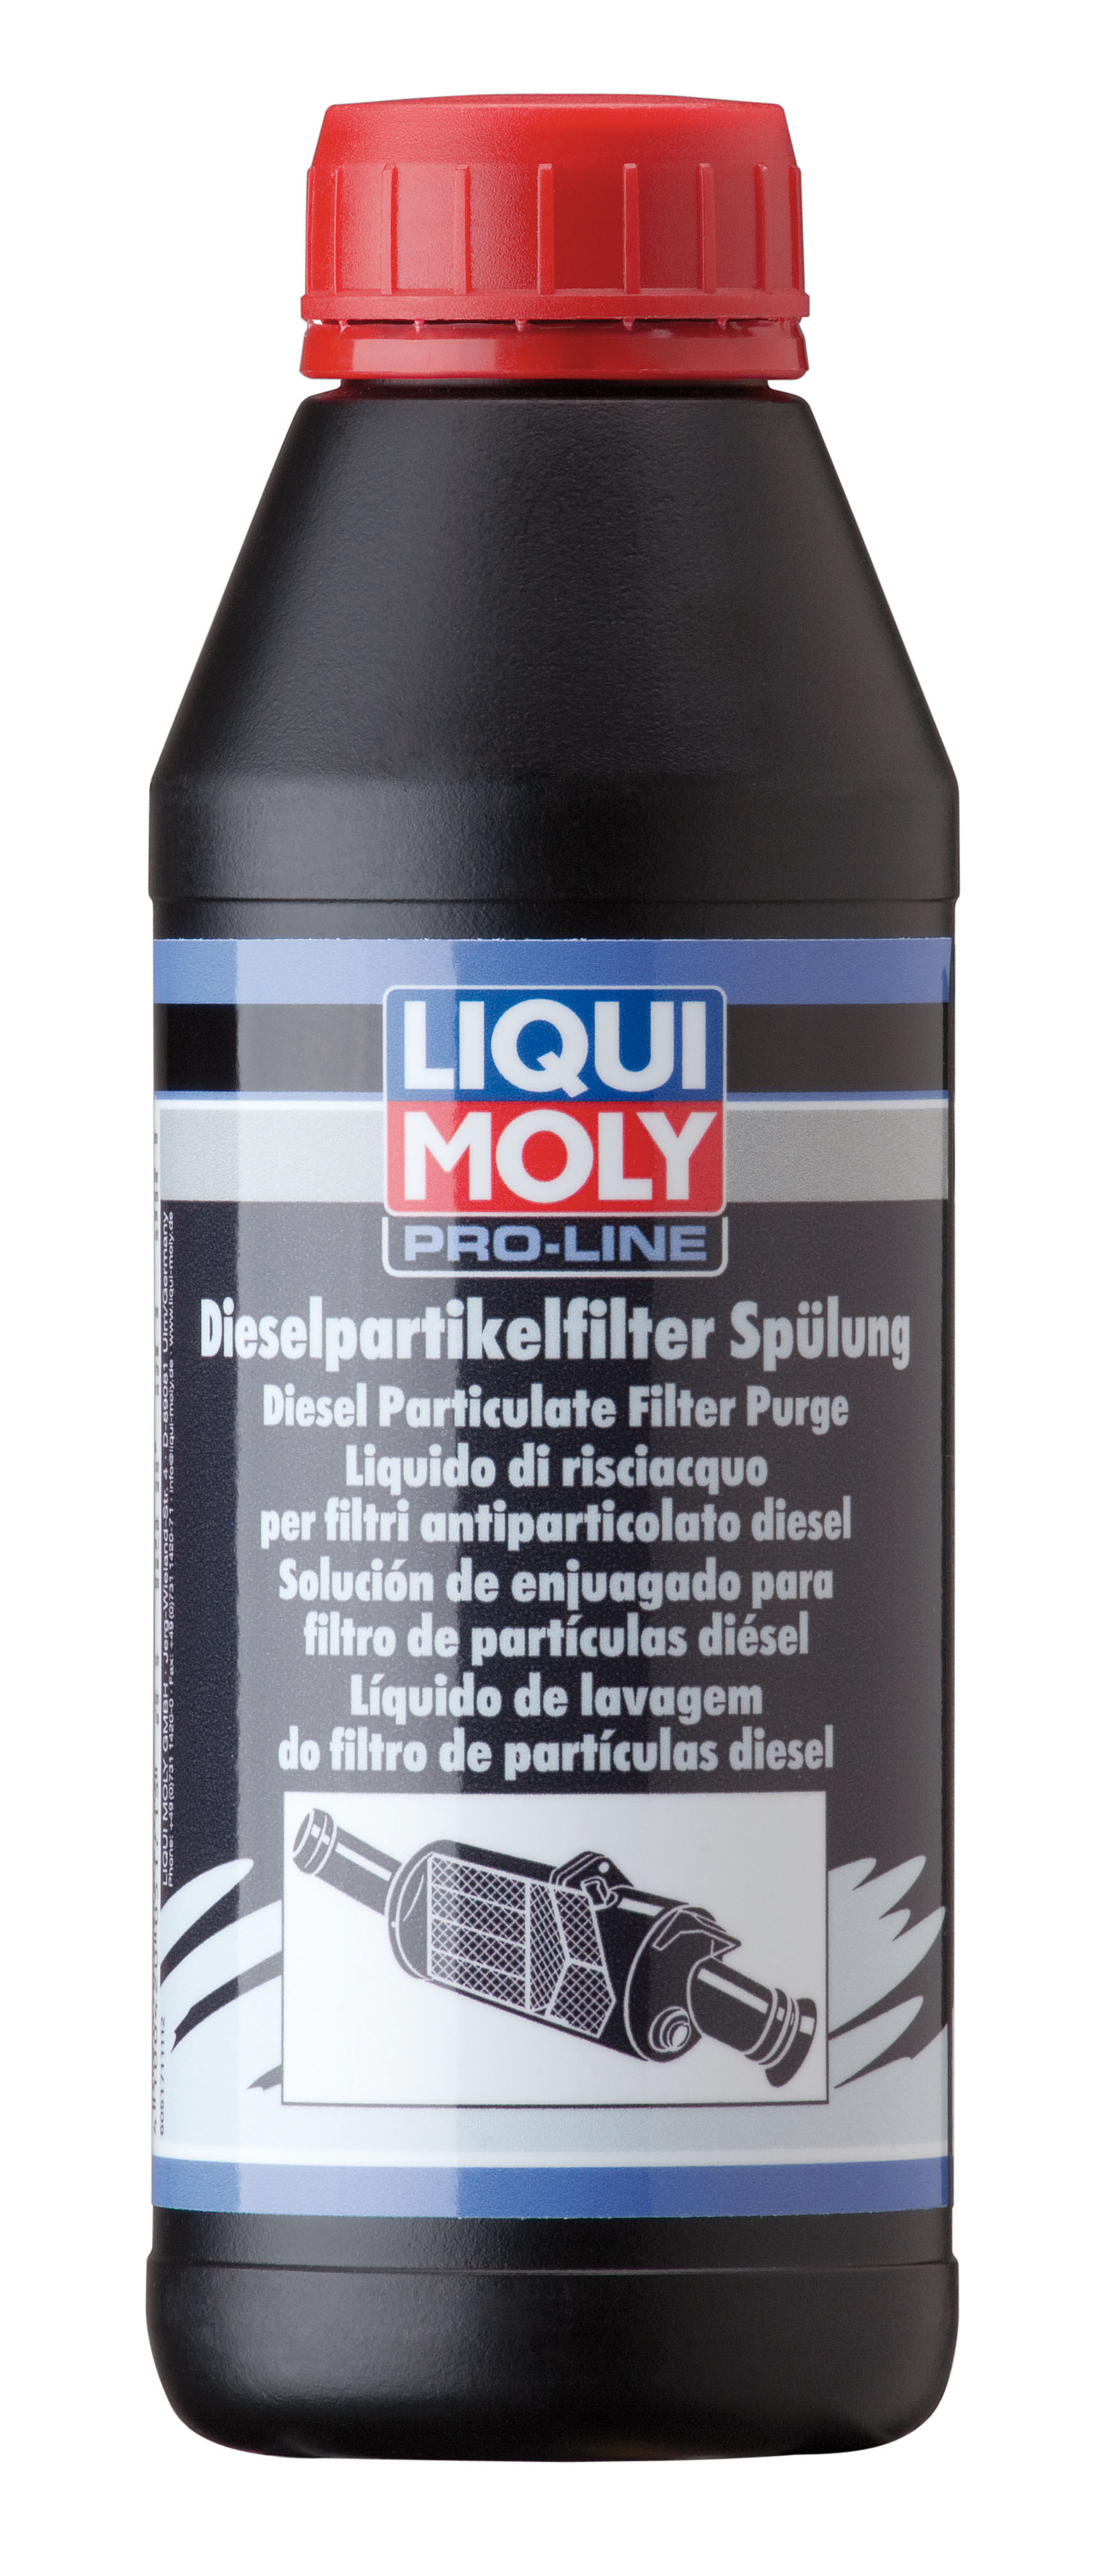  Купить Очиститель дизельного сажевого фильтра для легковых автомобилей Pro-Line Diesel Partikelfilter SpulungLIQUI MOLY 5171   